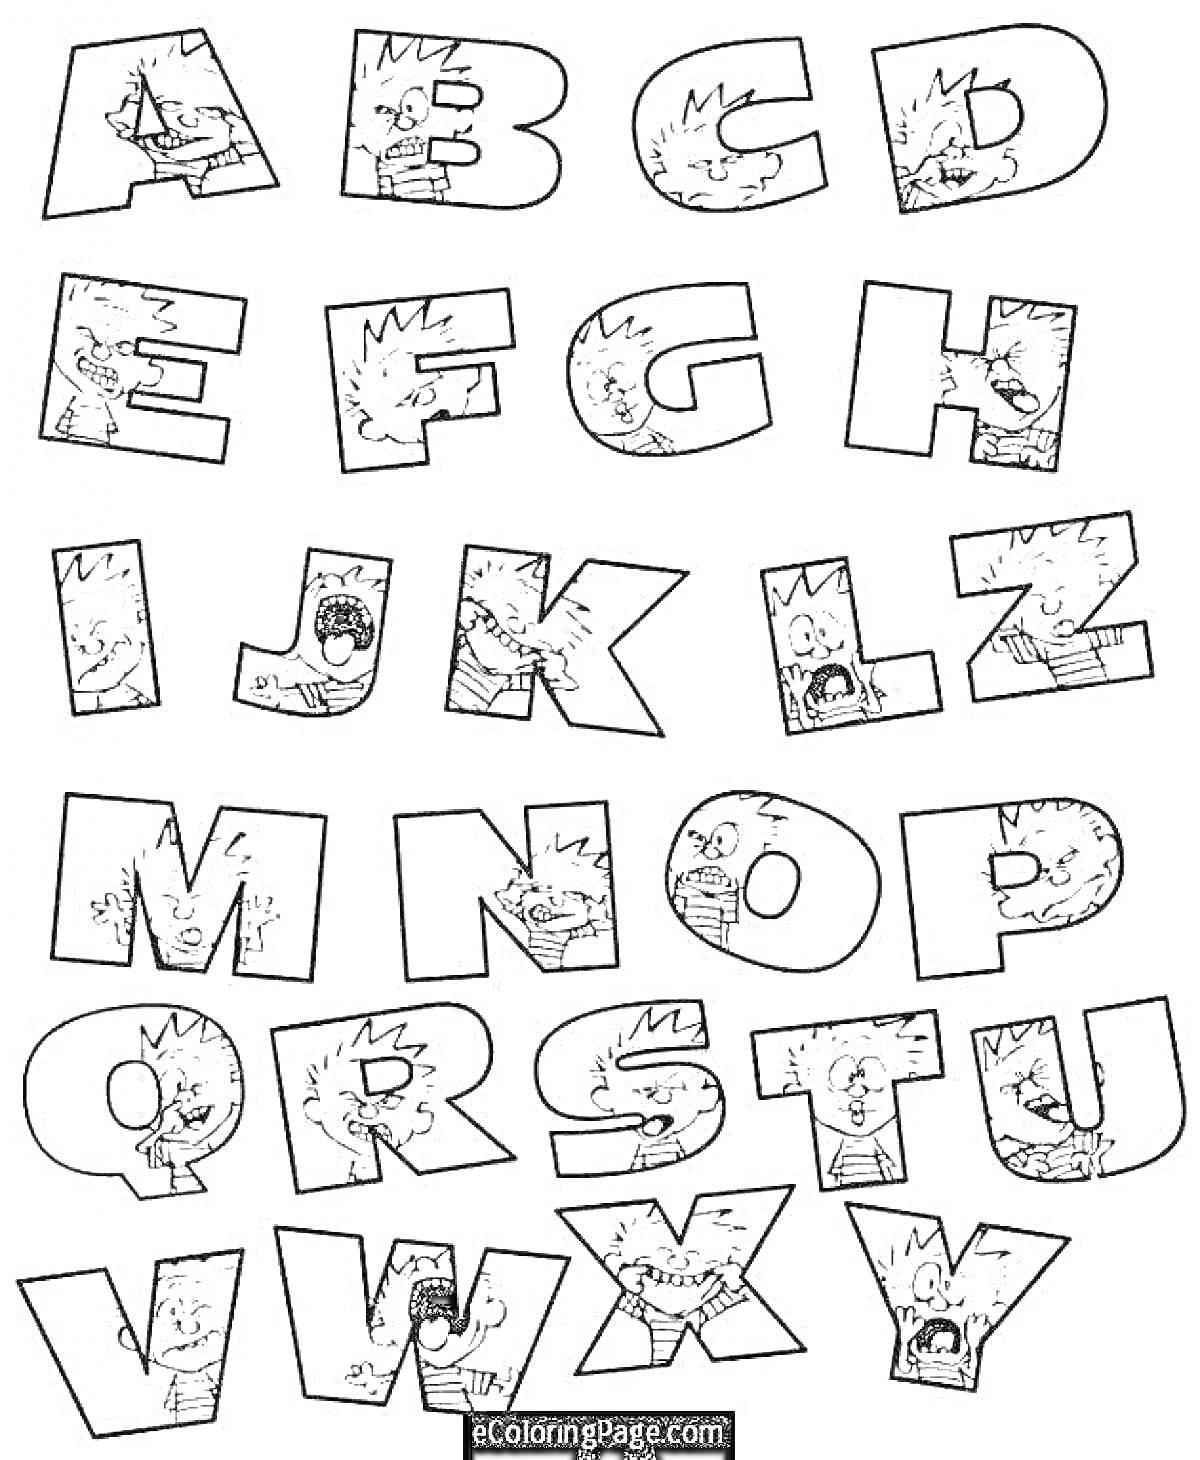 Раскраска Алфавит Lore с изображением букв, содержащих глаза и рты с зубами